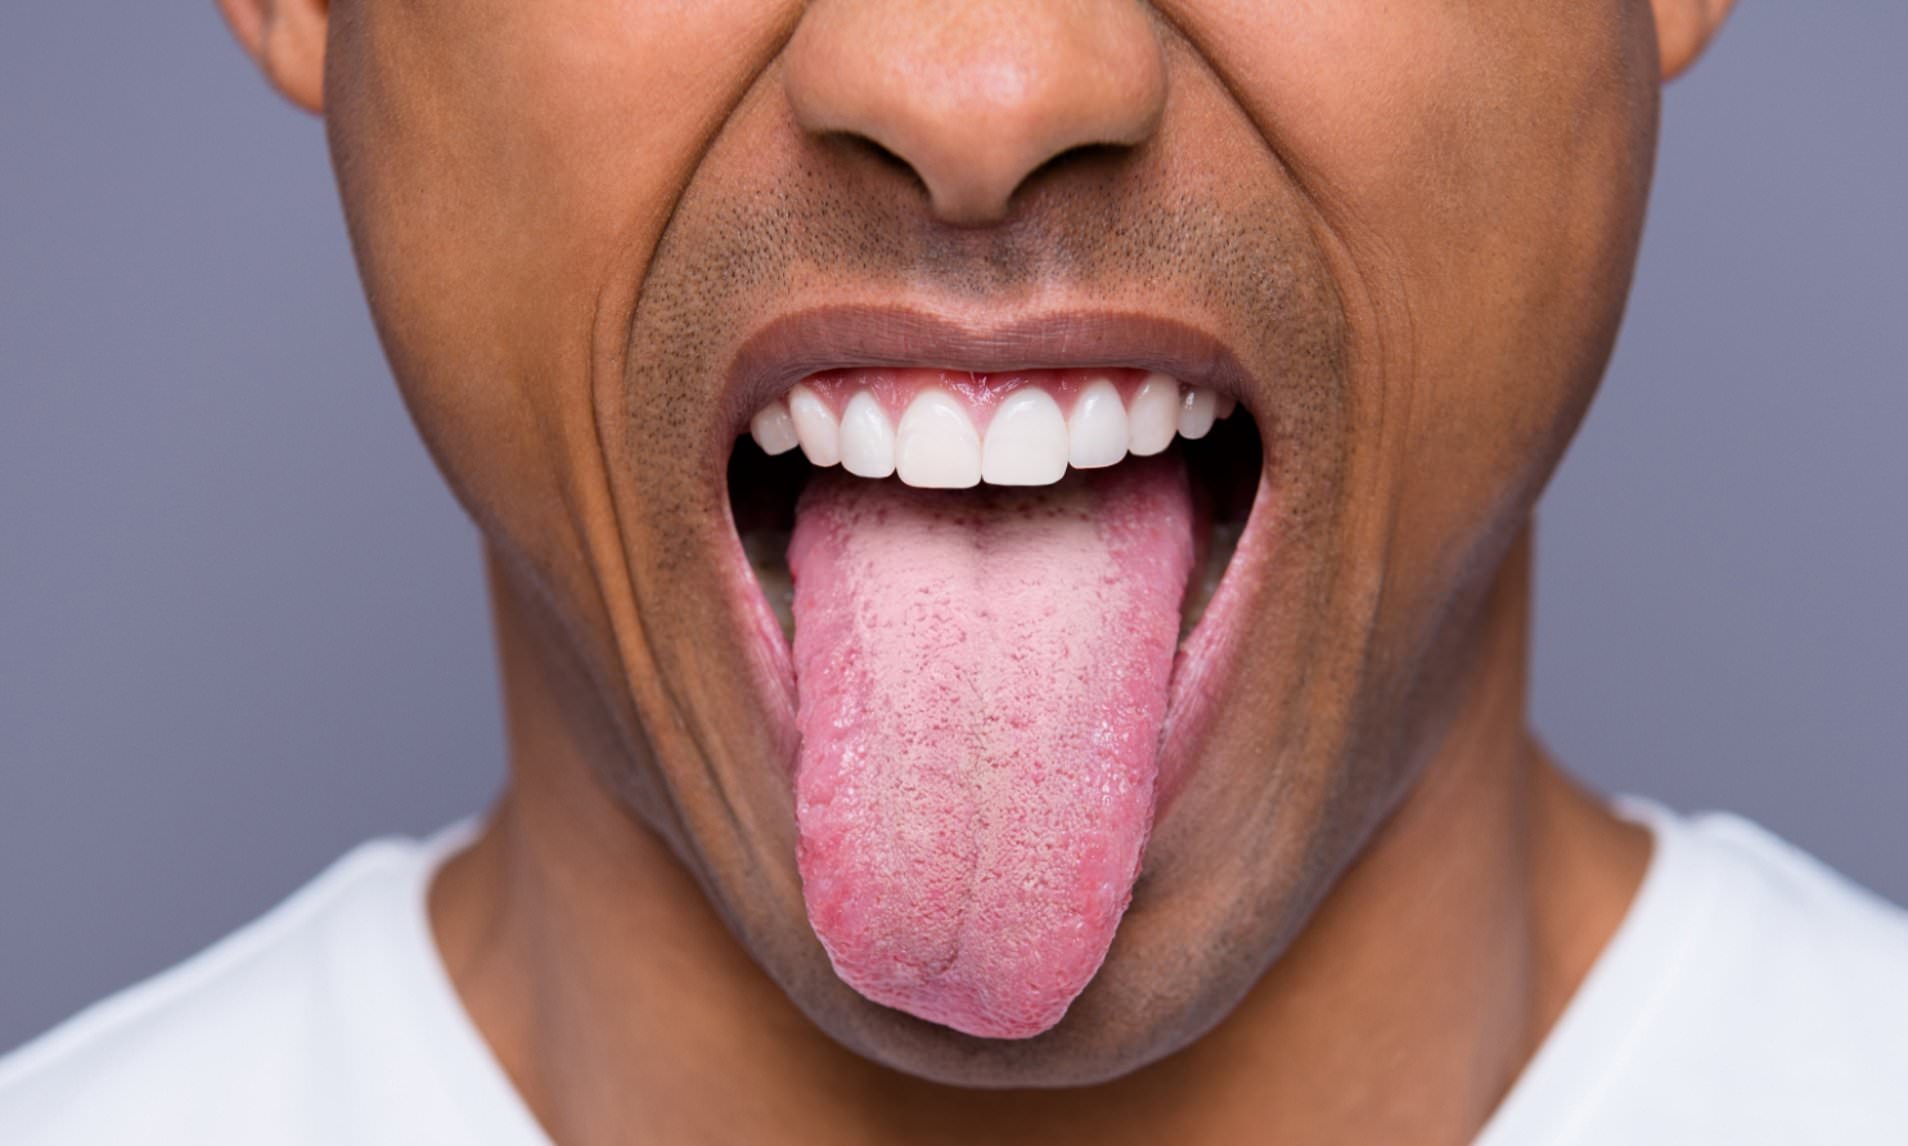 Minor Injuries That Actually Hurt - healthy tongue - Han